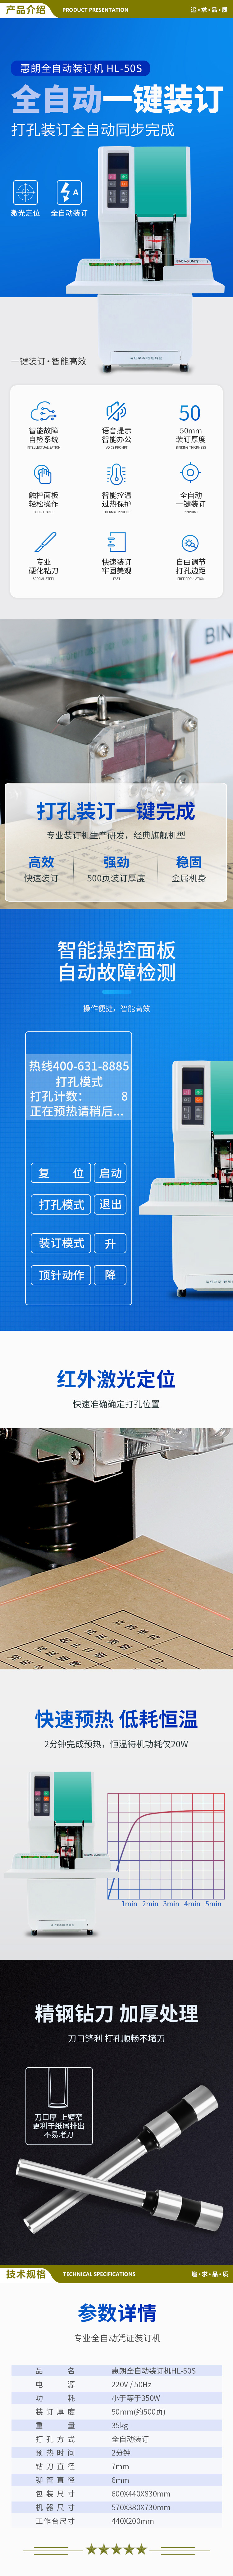 惠朗 huilang 50S 全自动凭证装订机 一键完成 2.jpg